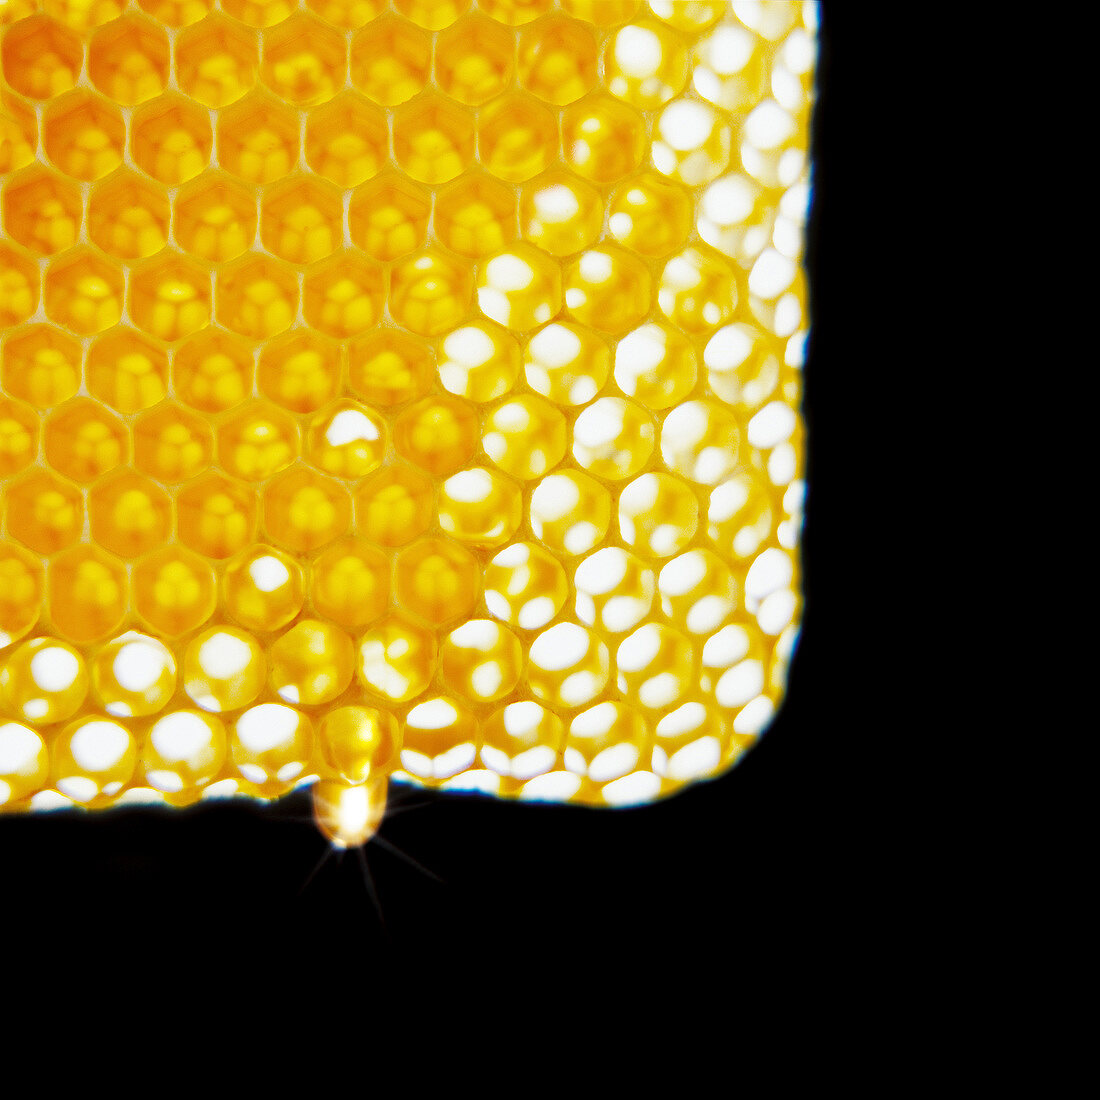 Gefüllte Honigwabe vor schwarzem Hintergrund